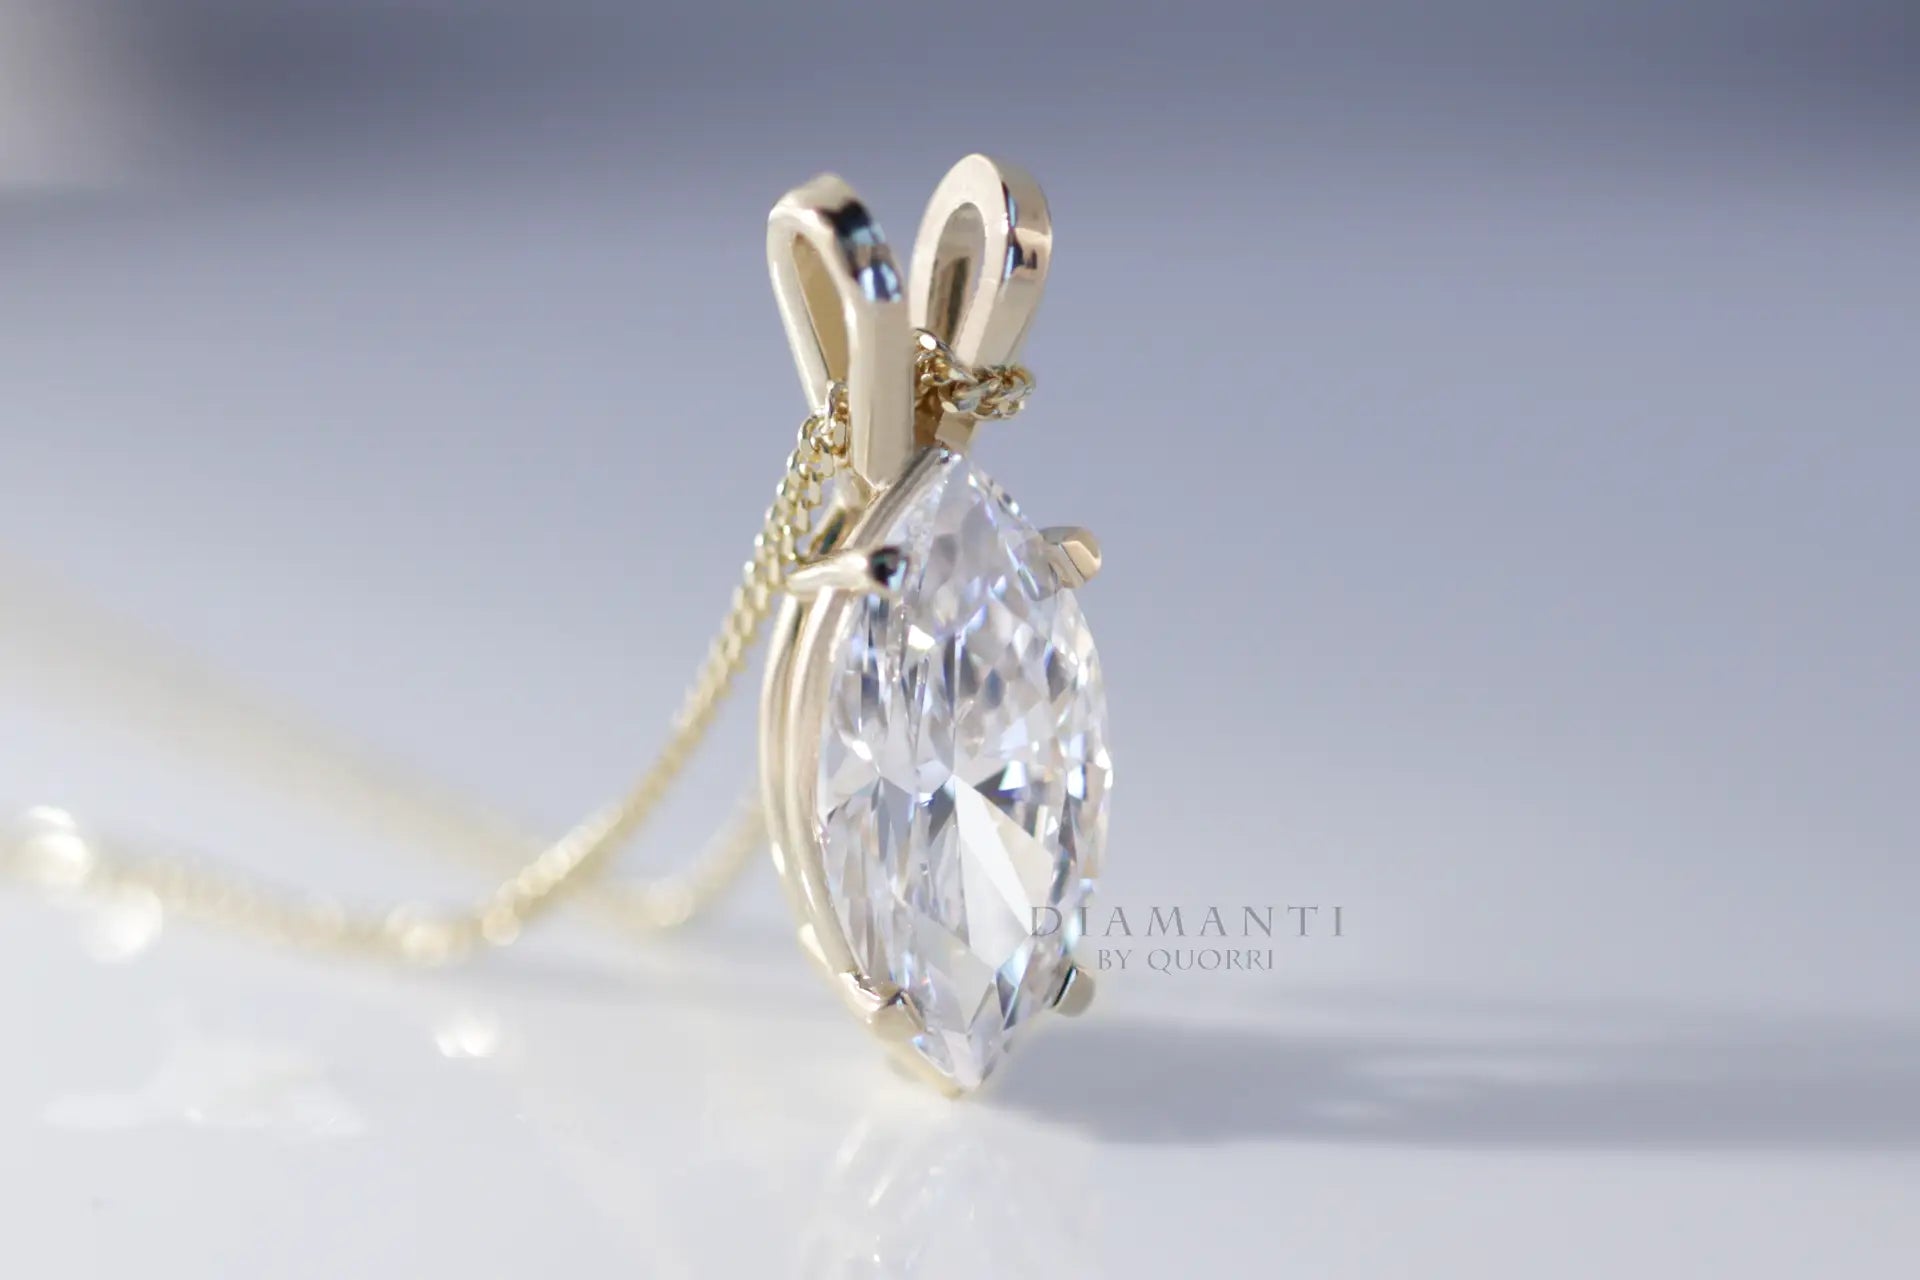 14k yellow gold designer 1.5ct marquise lab created diamond solitaire pendant Quorri